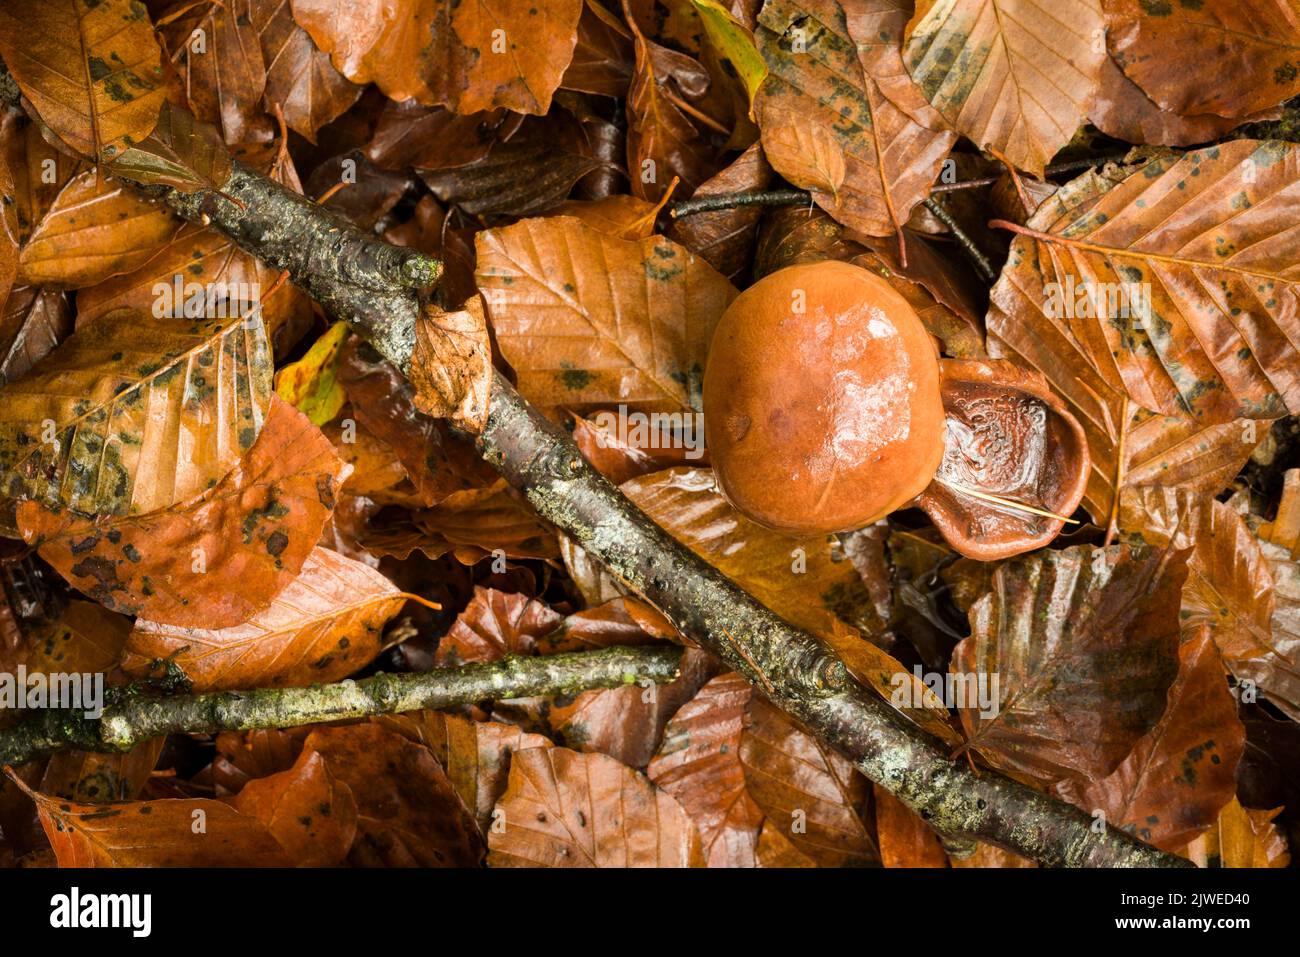 Champignons Chevalier brûlé (Tricholoma ustale) poussant dans la litière de feuilles sous un hêtre commun dans une forêt à feuilles larges dans les collines de Mendip, Somerset, Angleterre. Banque D'Images